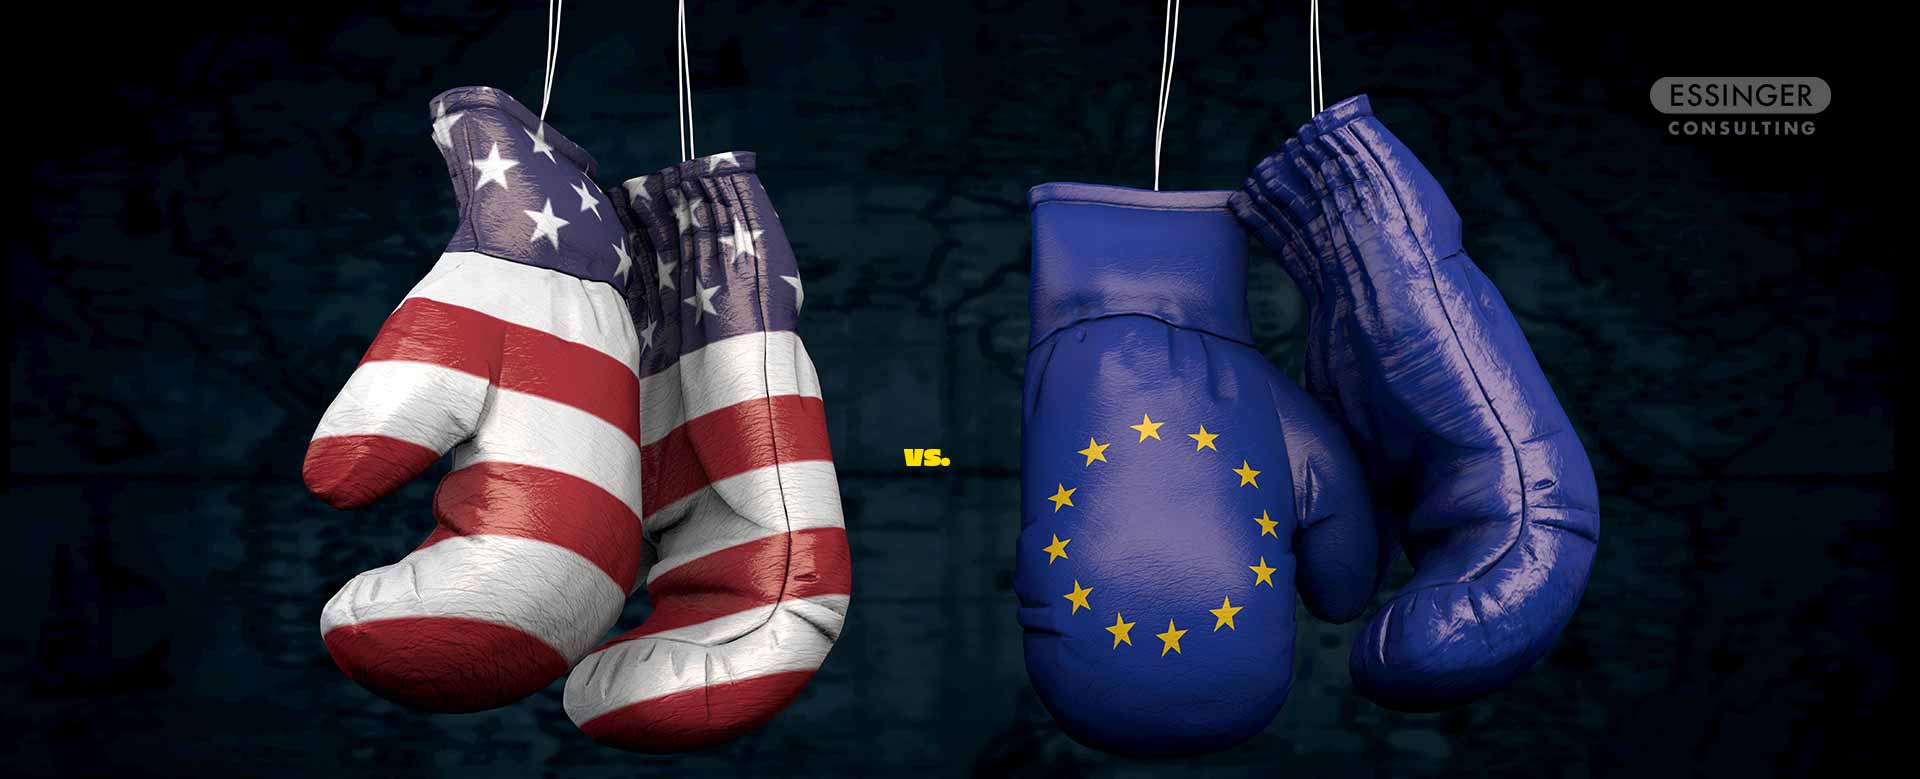 USA-EU-privacy-Framework. Artikel von Philip Essinger, Datenschutzbeauftragter